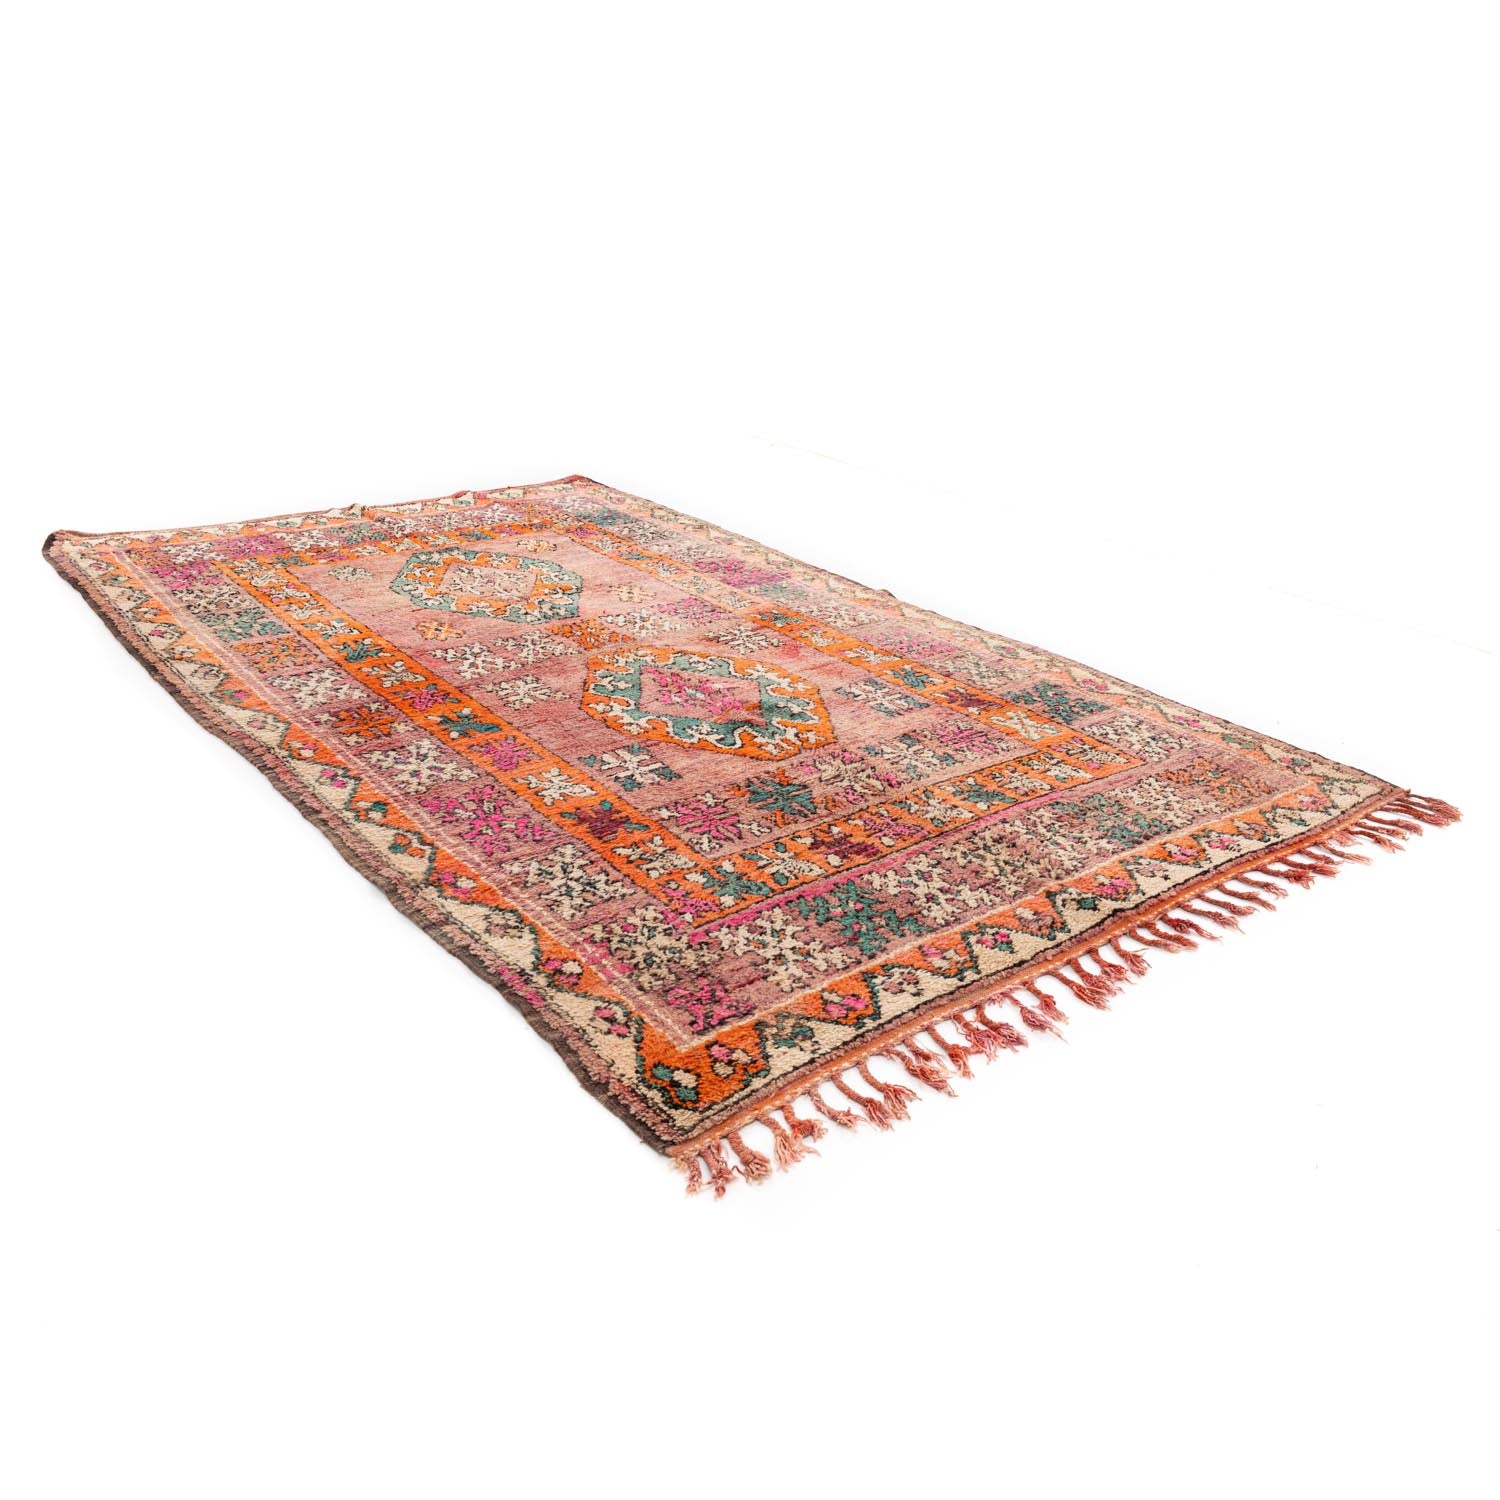 Taroudant - Vintage Moroccan rug